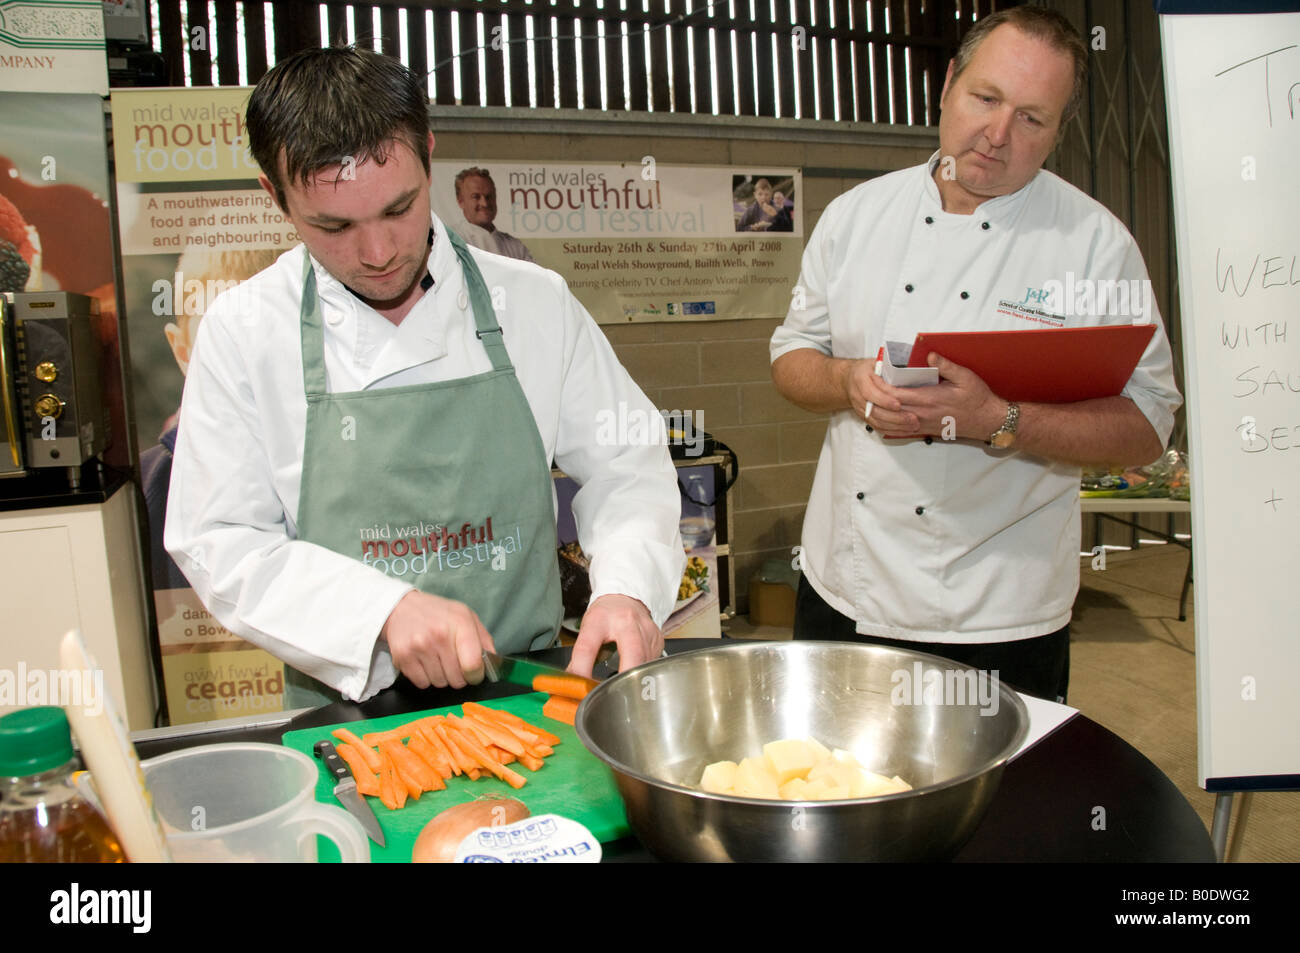 L'évaluation d'un juge de concours de cuisine au Pays de Galles bouchée food festival Builth Wells Powys Avril 2008 Banque D'Images